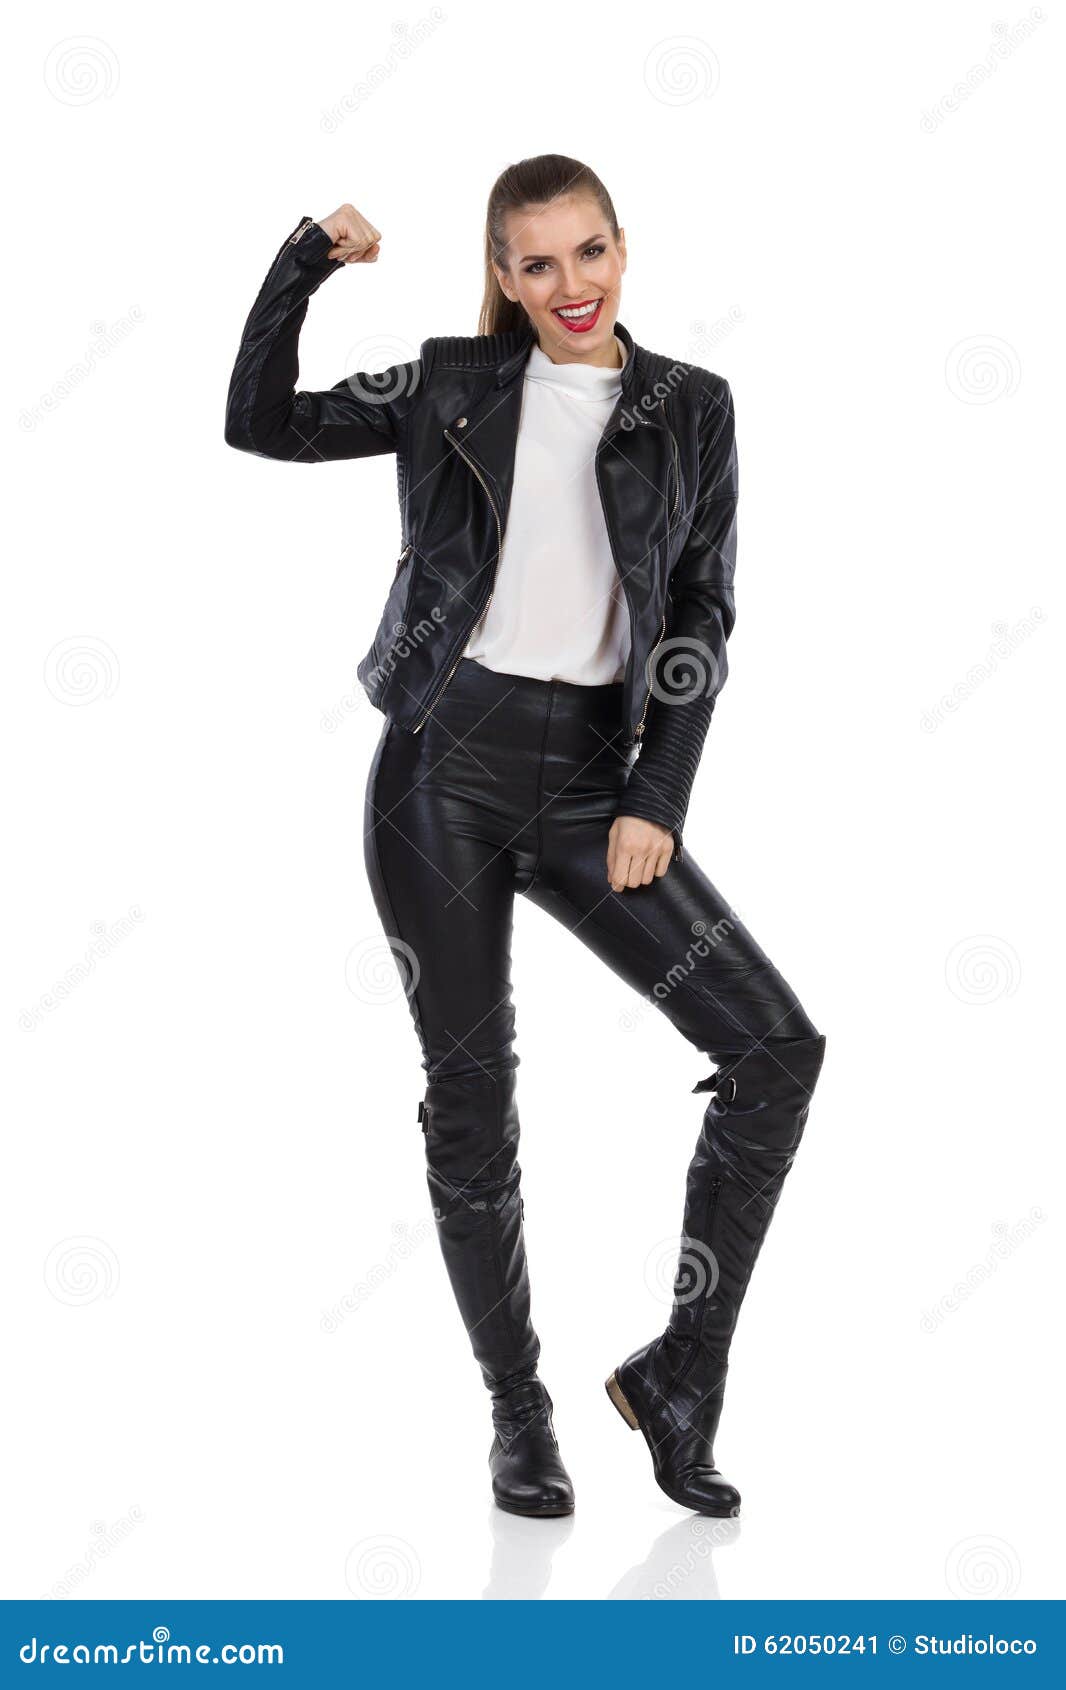 Proud Rock Girl stock image. Image of jacket, posing - 62050241